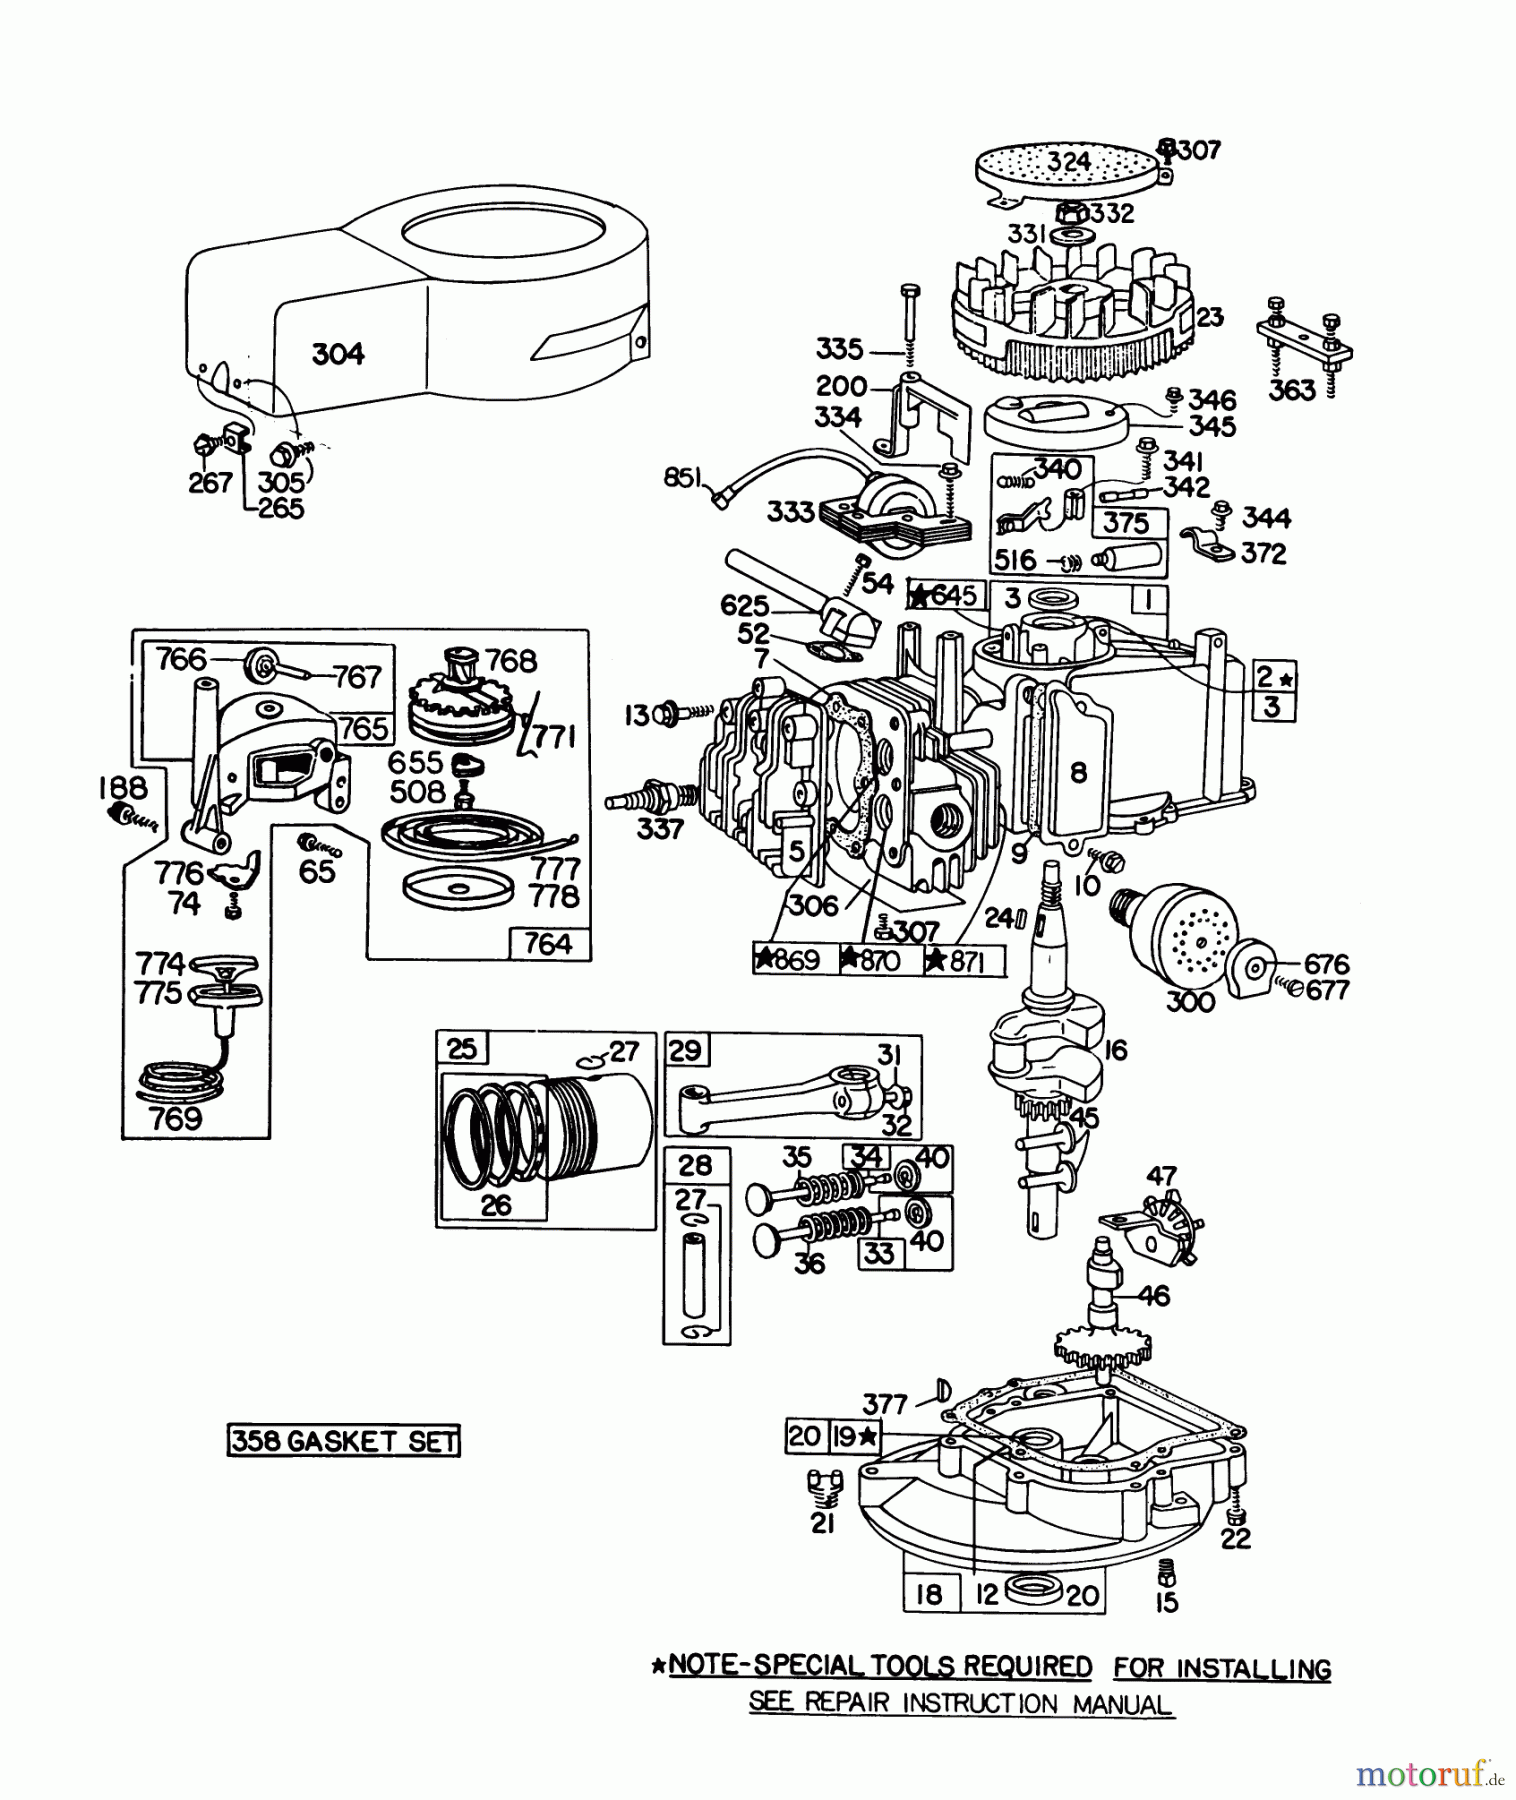  Toro Neu Mowers, Walk-Behind Seite 1 20698 - Toro Lawnmower, 1979 (9000001-9999999) ENGINE BRIGGS & STRATTON MODEL NO. 92908-1934-01